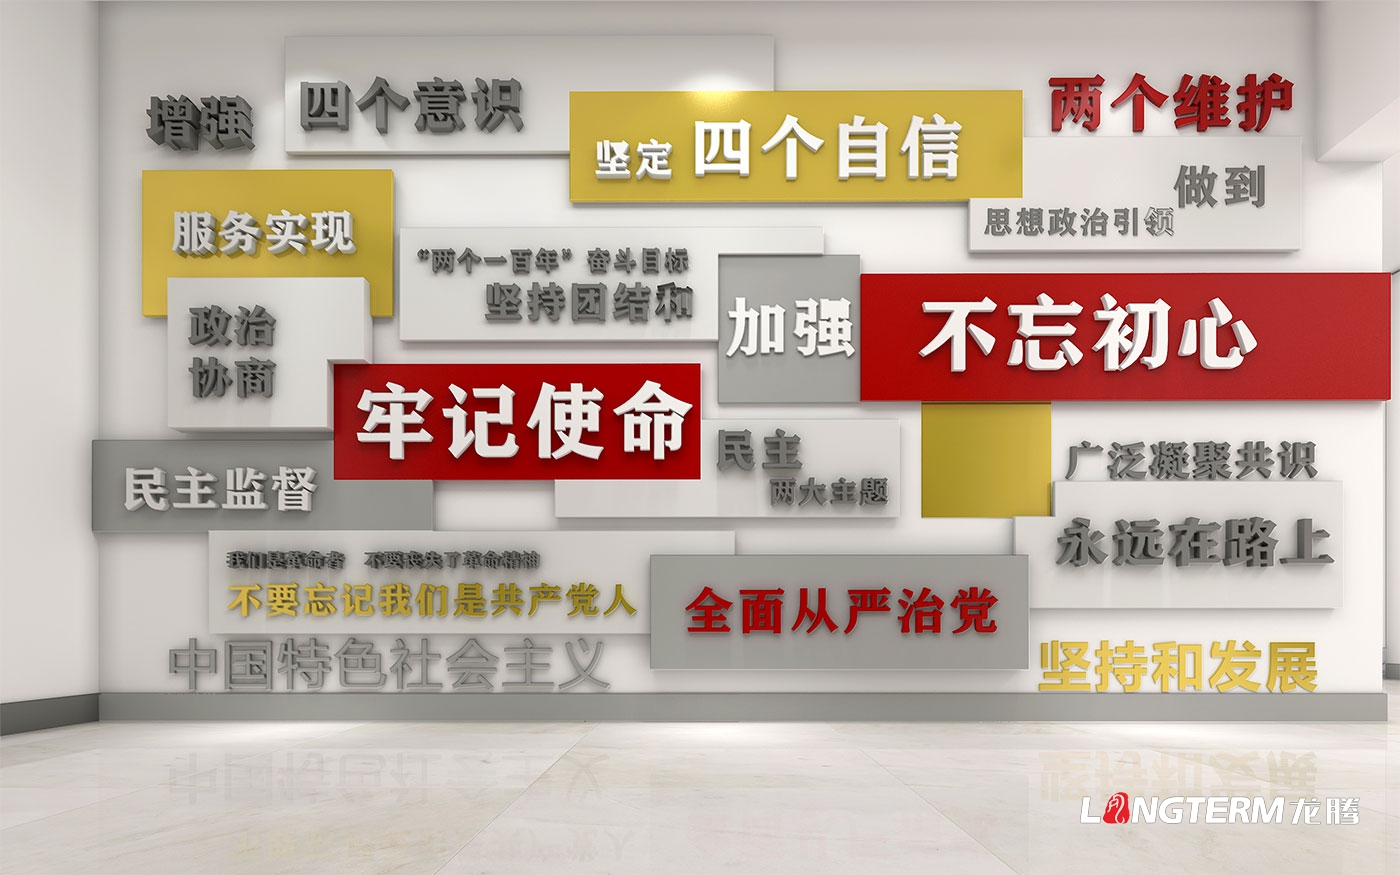 龙泉政协党建示范点设计_龙泉驿区政协党建示范阵地建设计划